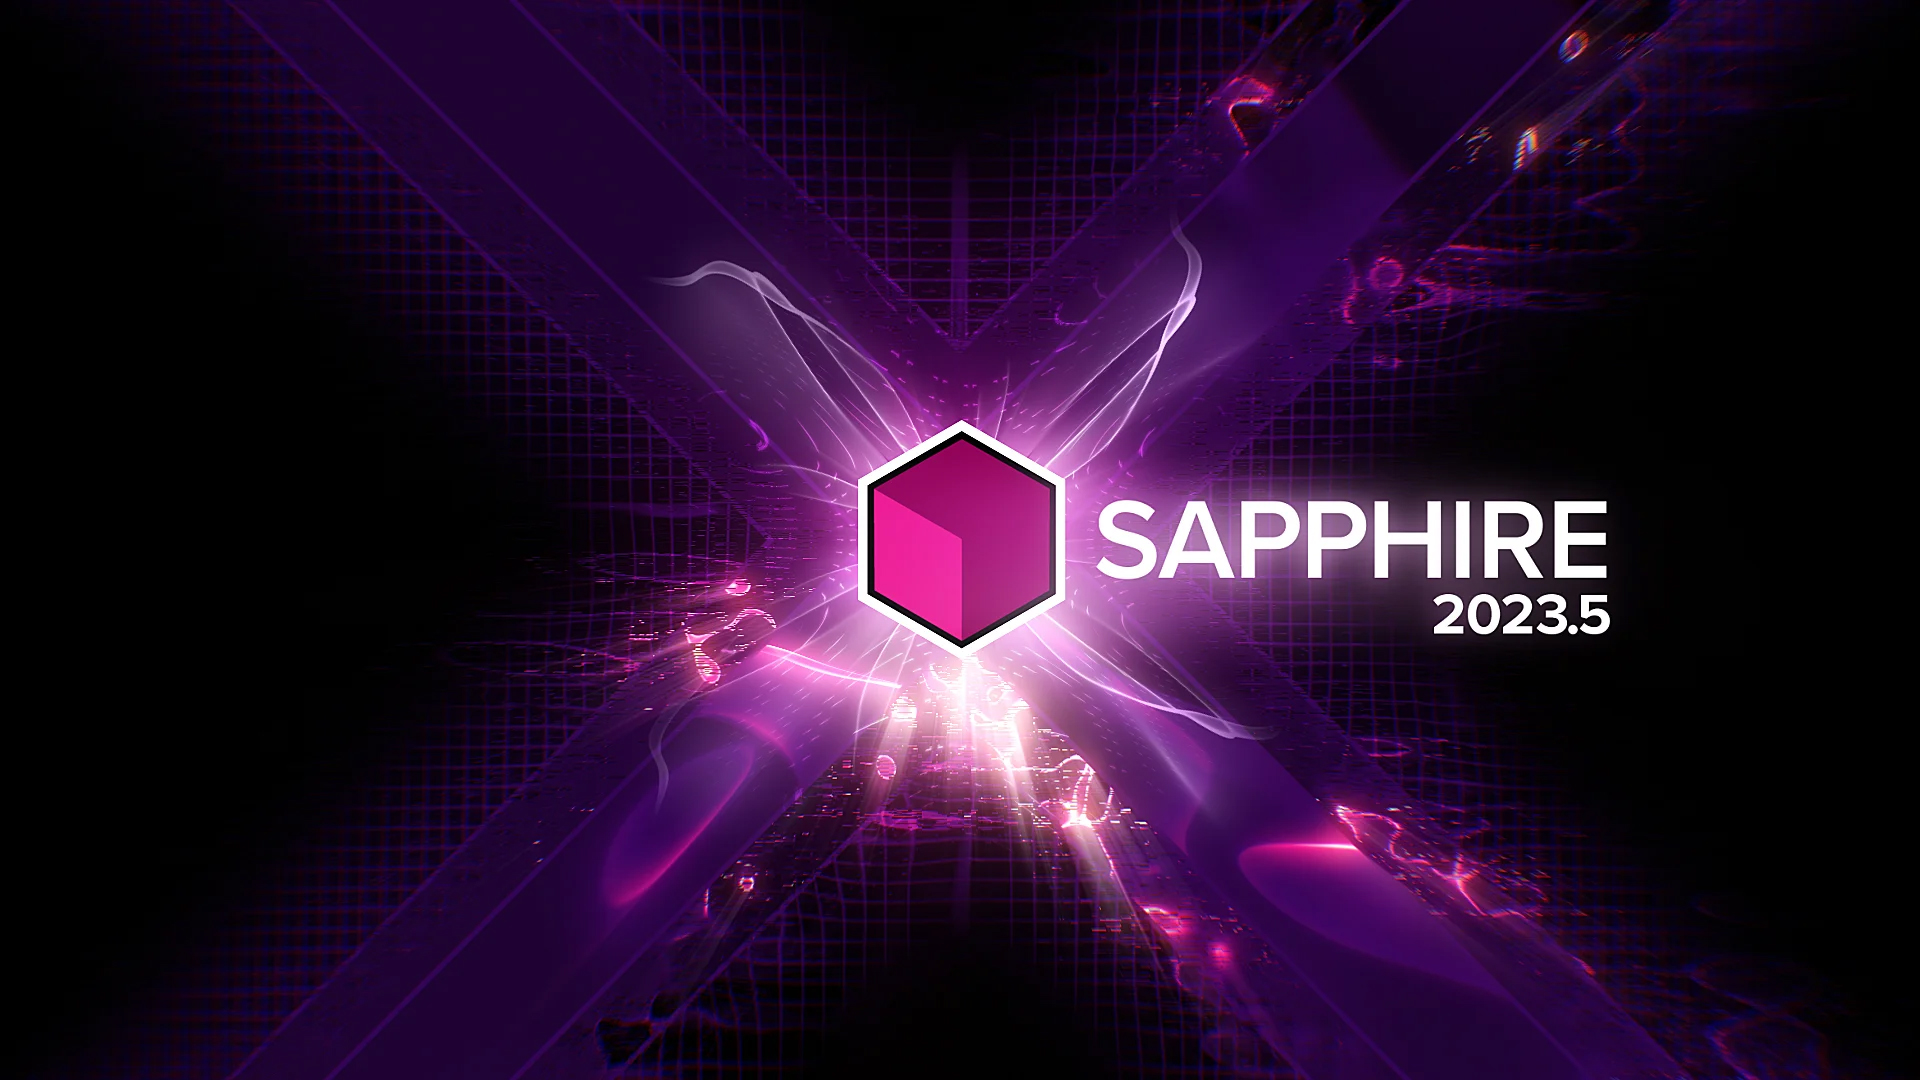 Sapphire 2023.5 - フラッシュバックジャパン